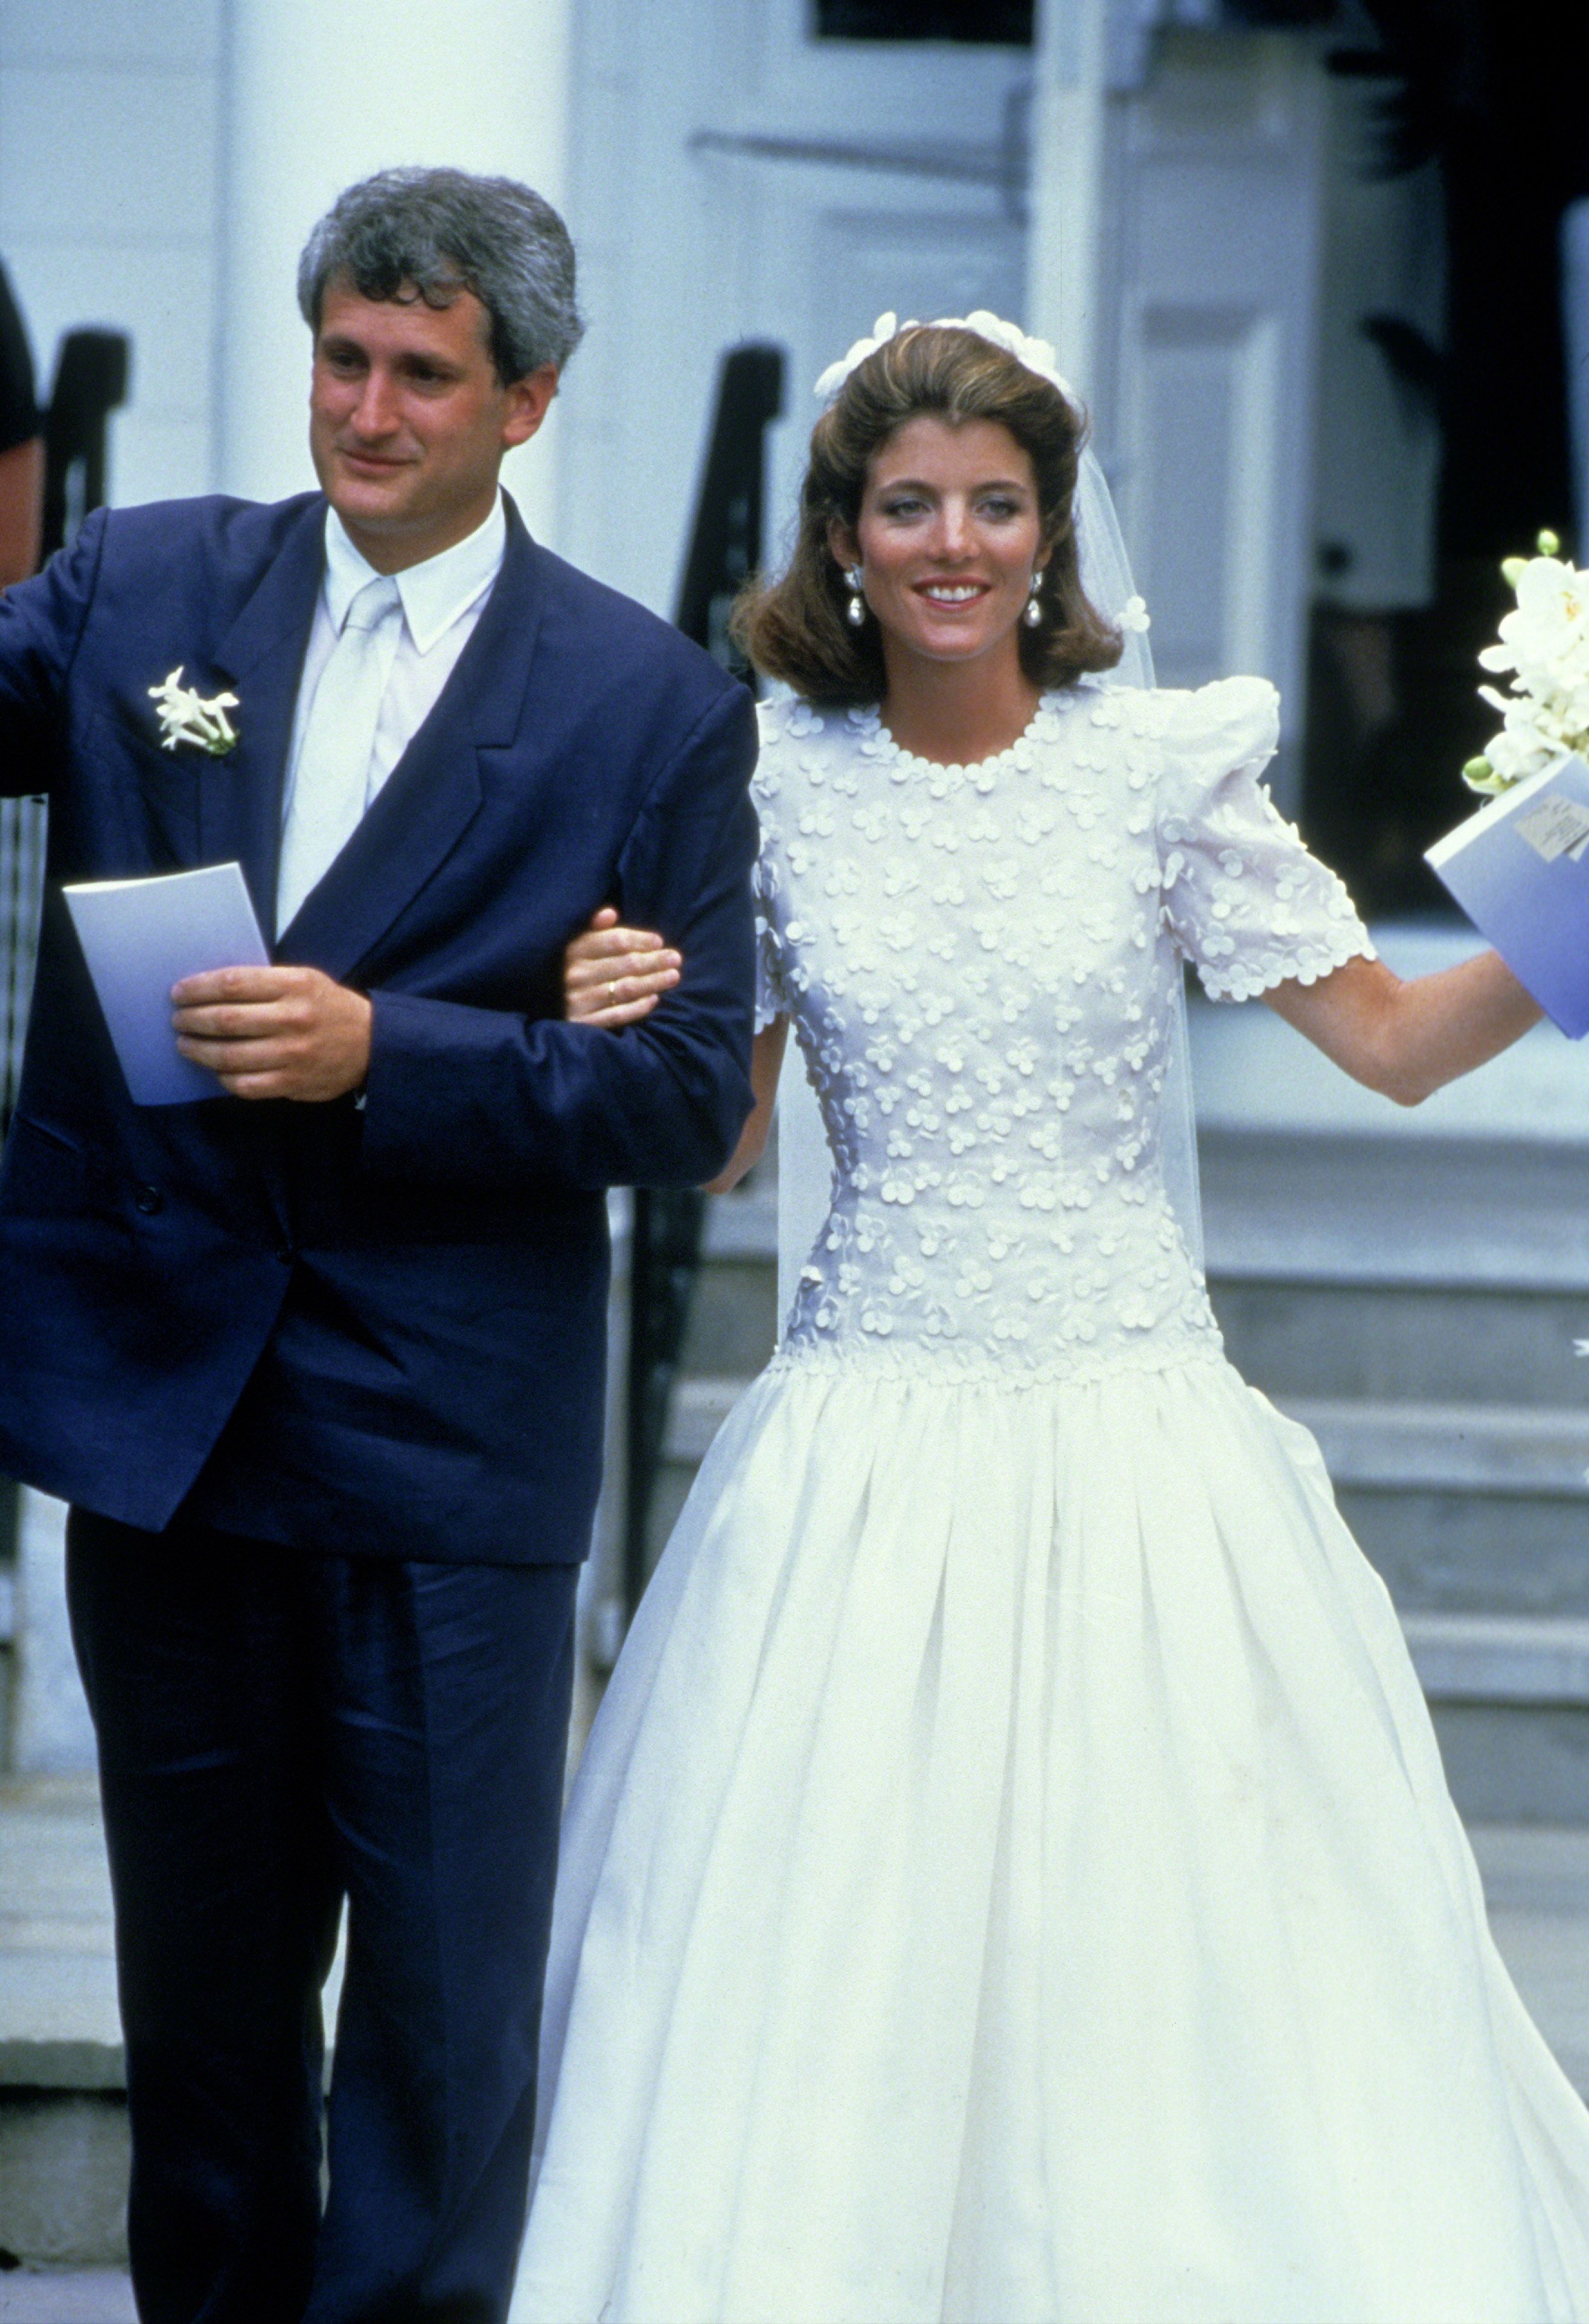 Caroline Kennedy's Wedding - Photos of Caroline Kennedy and Edwin Schlossberg on Their Wedding Day